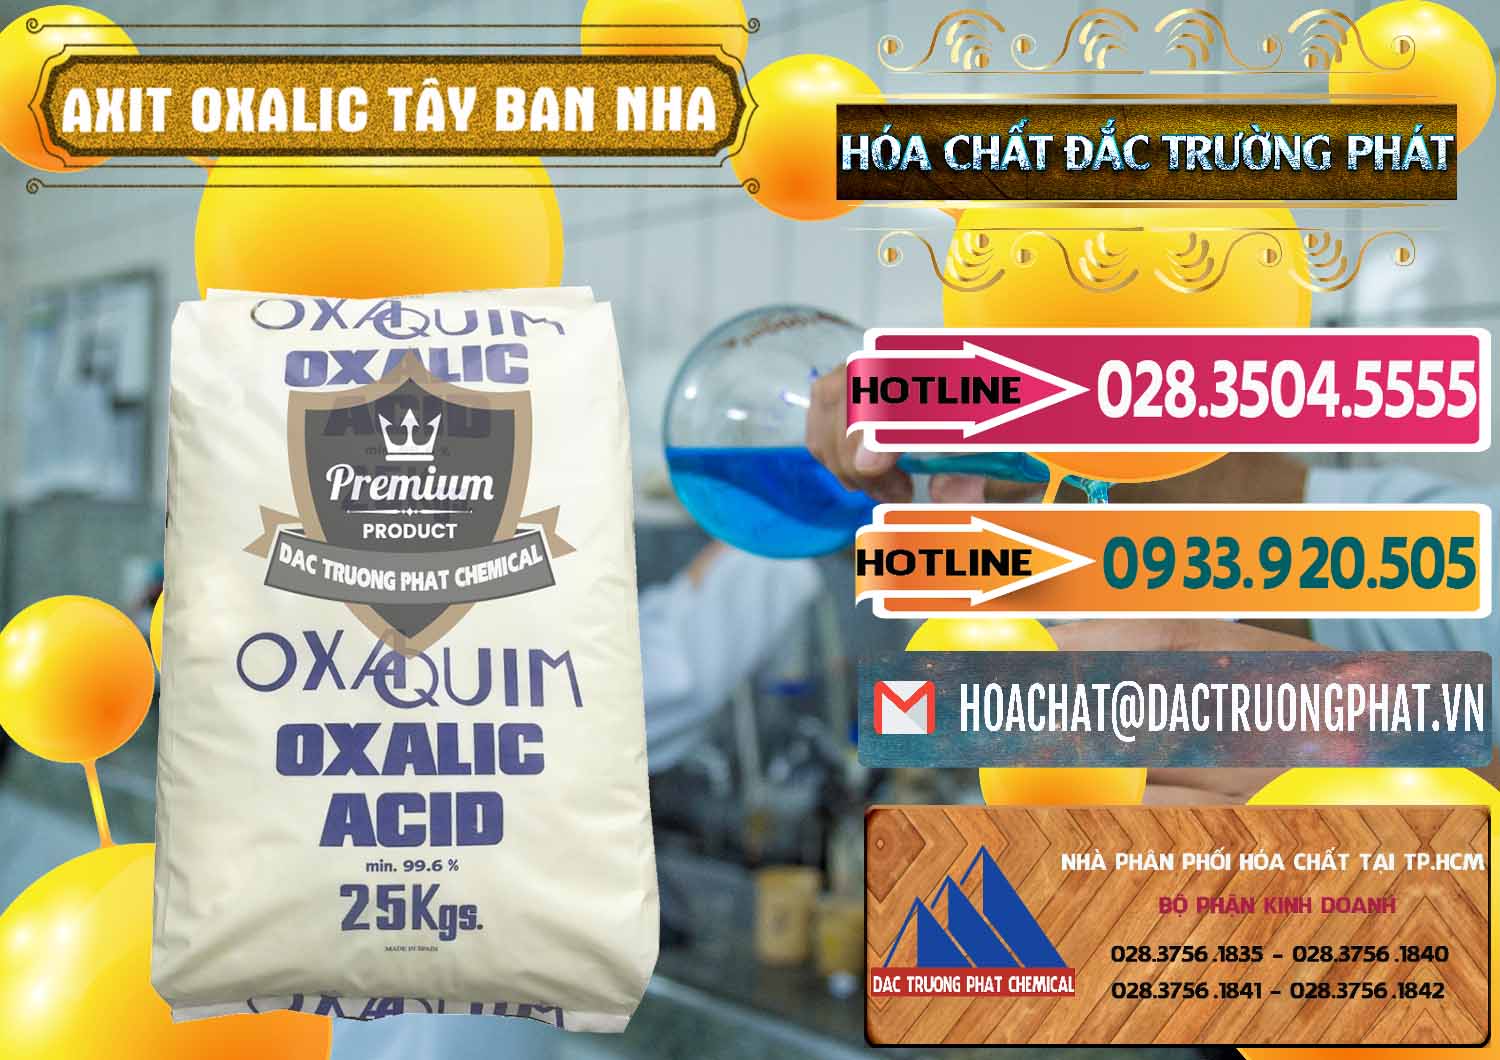 Công ty chuyên bán _ cung cấp Acid Oxalic – Axit Oxalic 99.6% Tây Ban Nha Spain - 0269 - Nhà phân phối & nhập khẩu hóa chất tại TP.HCM - dactruongphat.vn